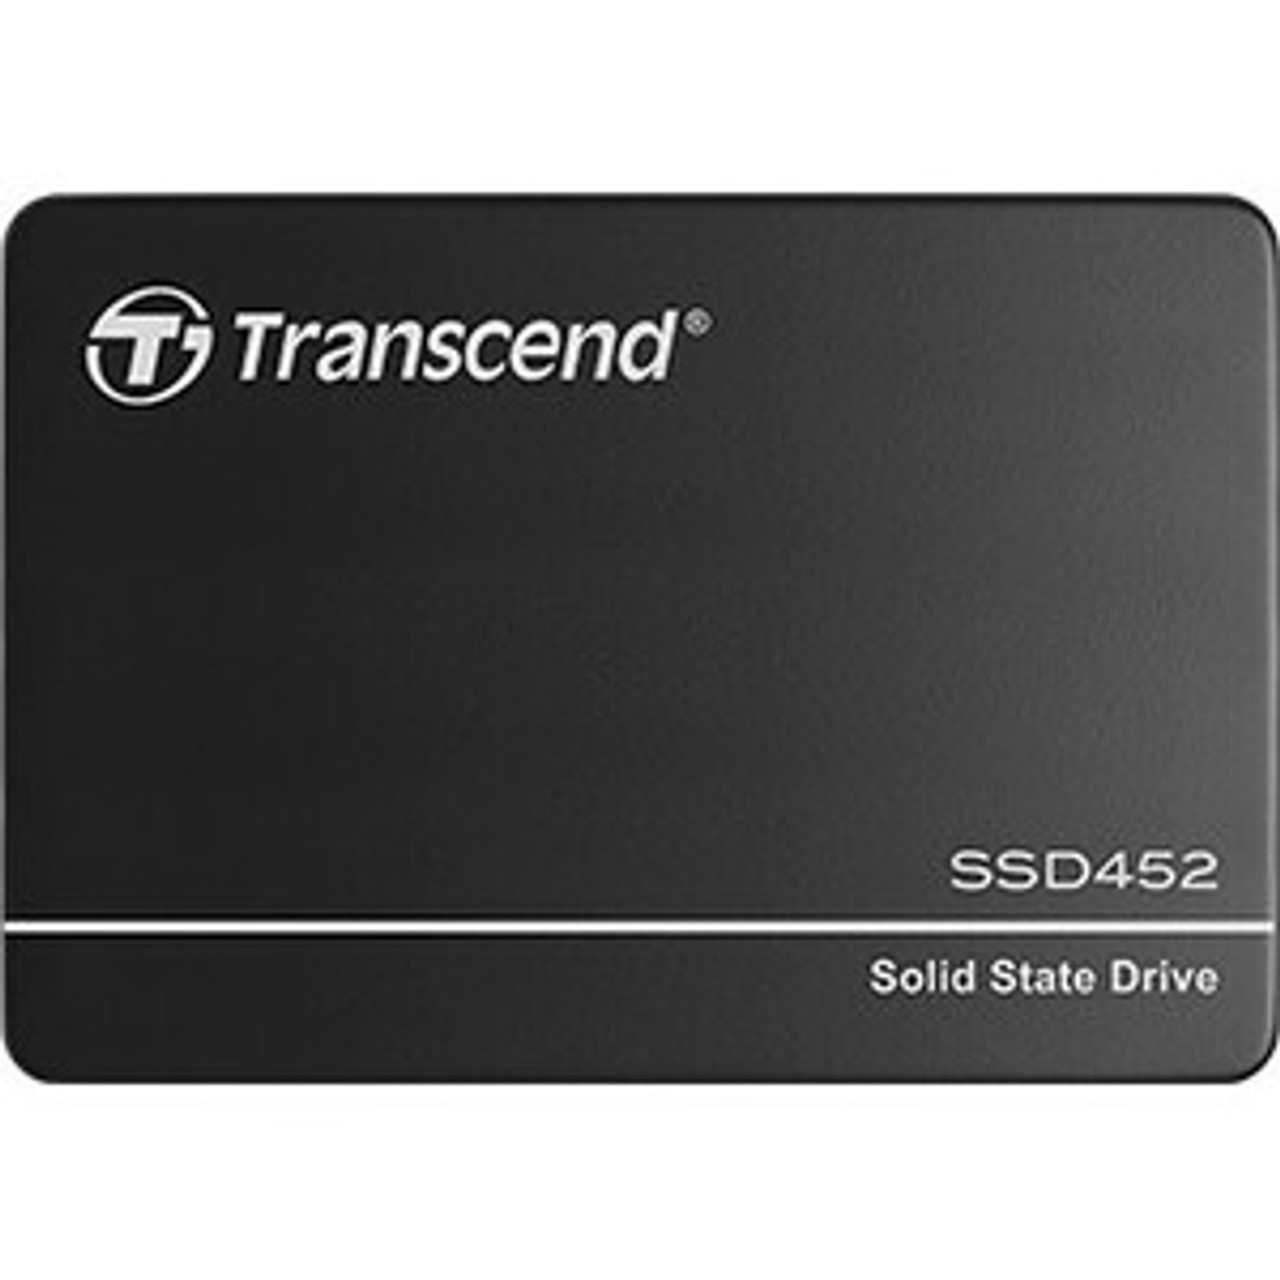 Transcend SSD452K 256 GB Solid State Drive - 2.5" Internal - SATA  MFR P/N TS256GSSD452K